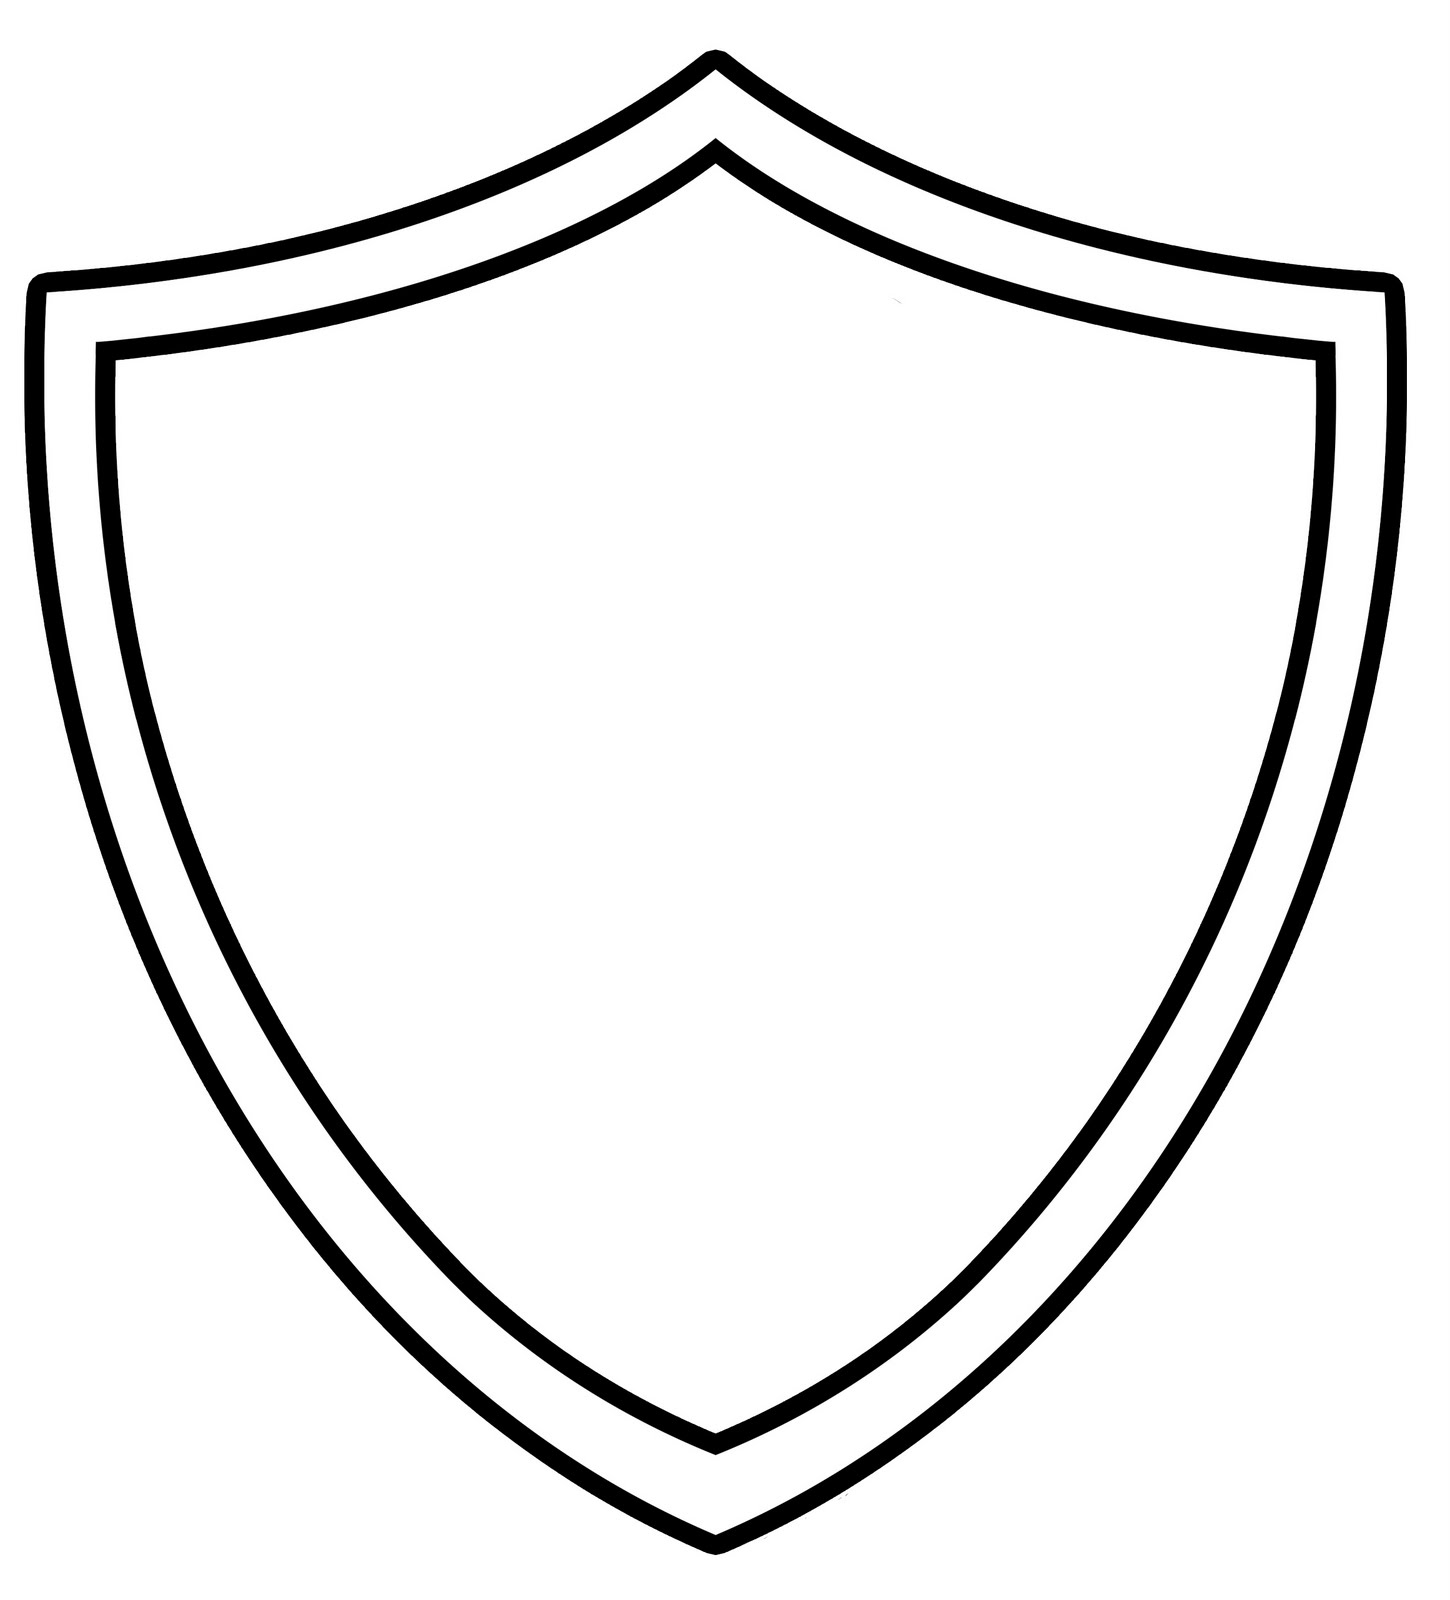 Images For > Blank Emblem Logo